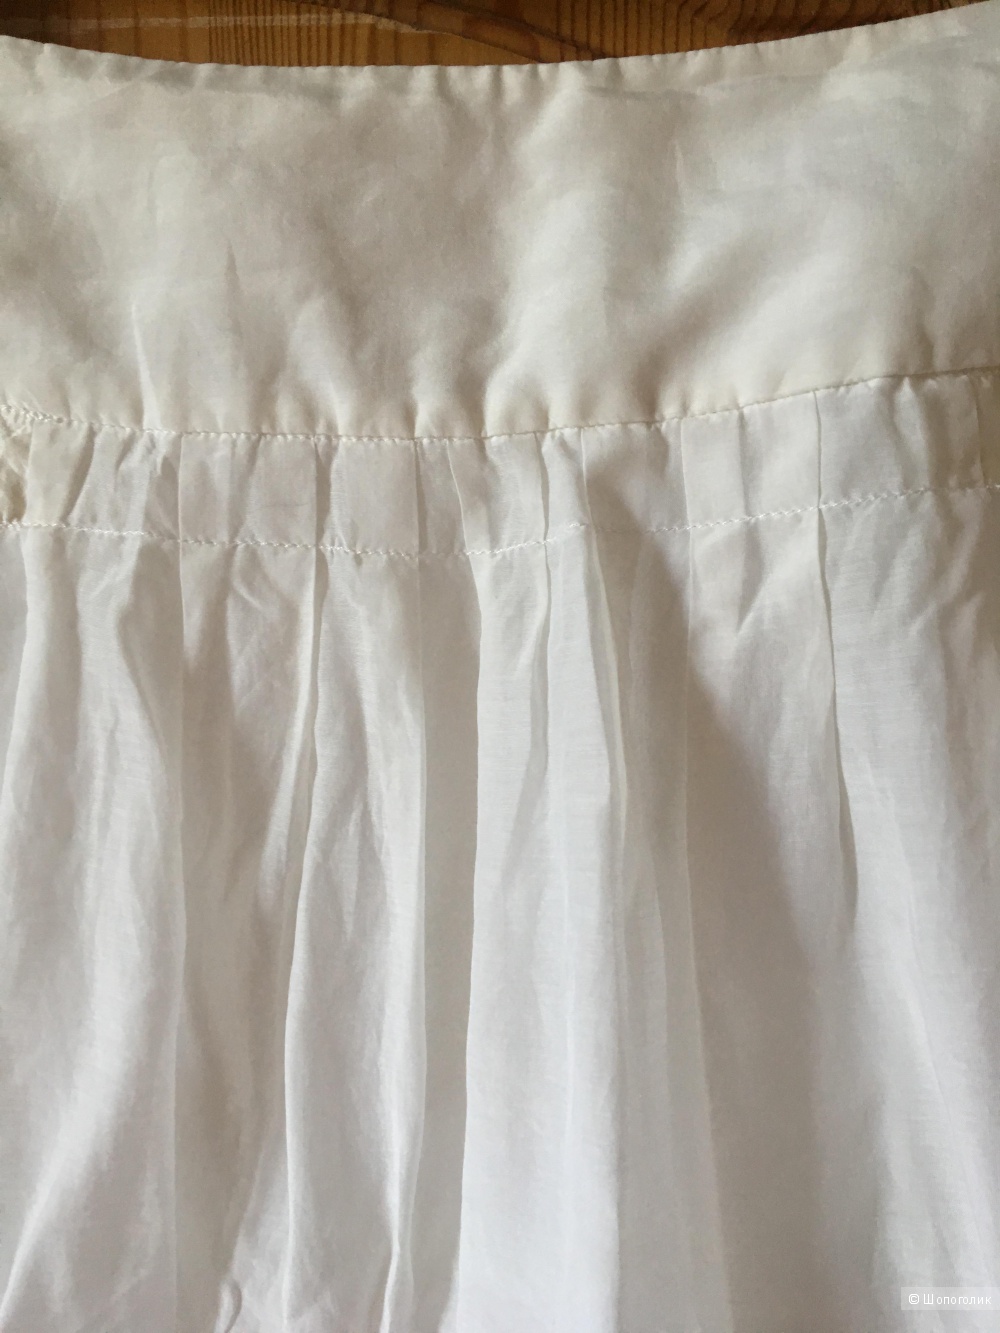 Белая юбка хлопок/шелк Boss Orange размер D36 (на росс.44)